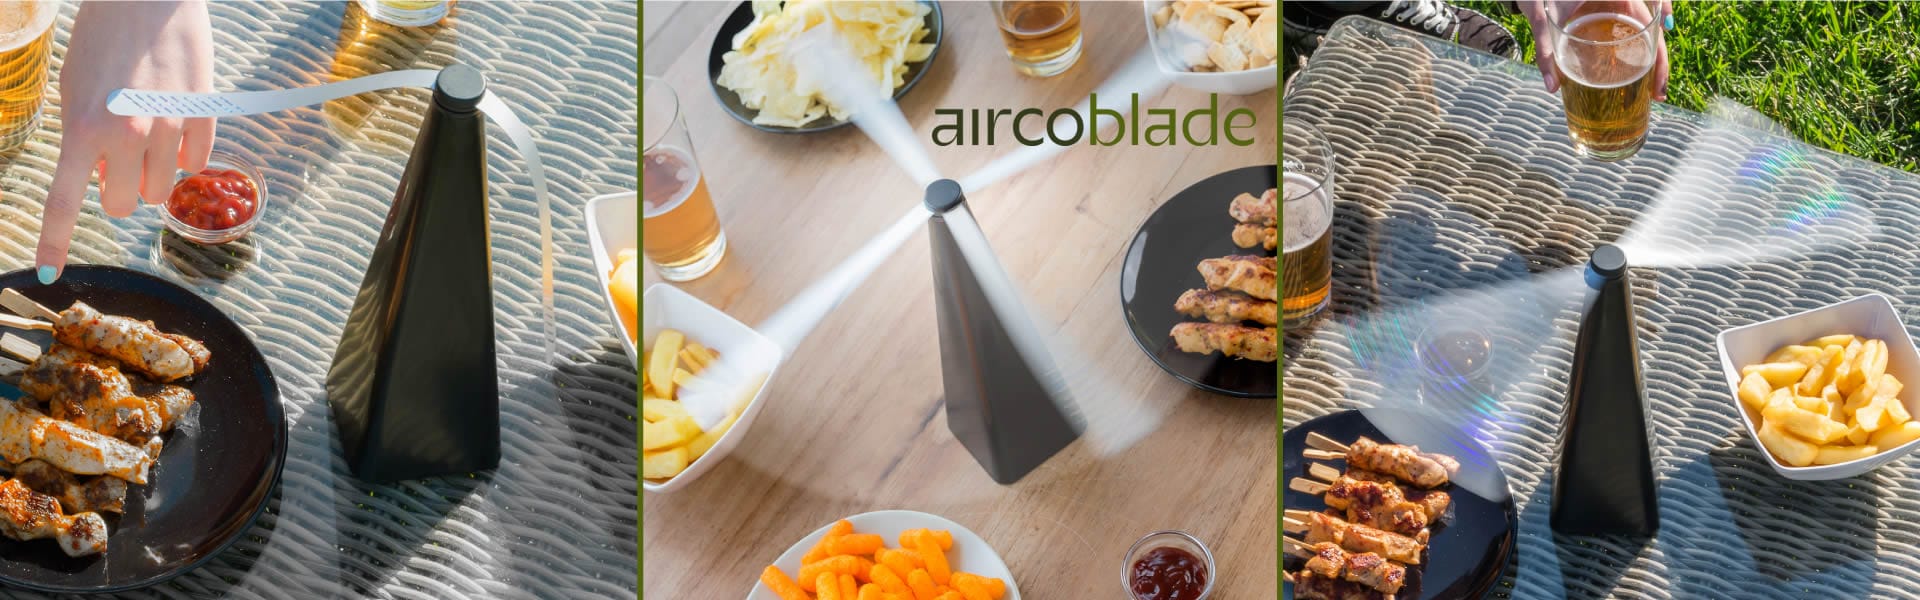 AircoBlade reseñas y opiniones